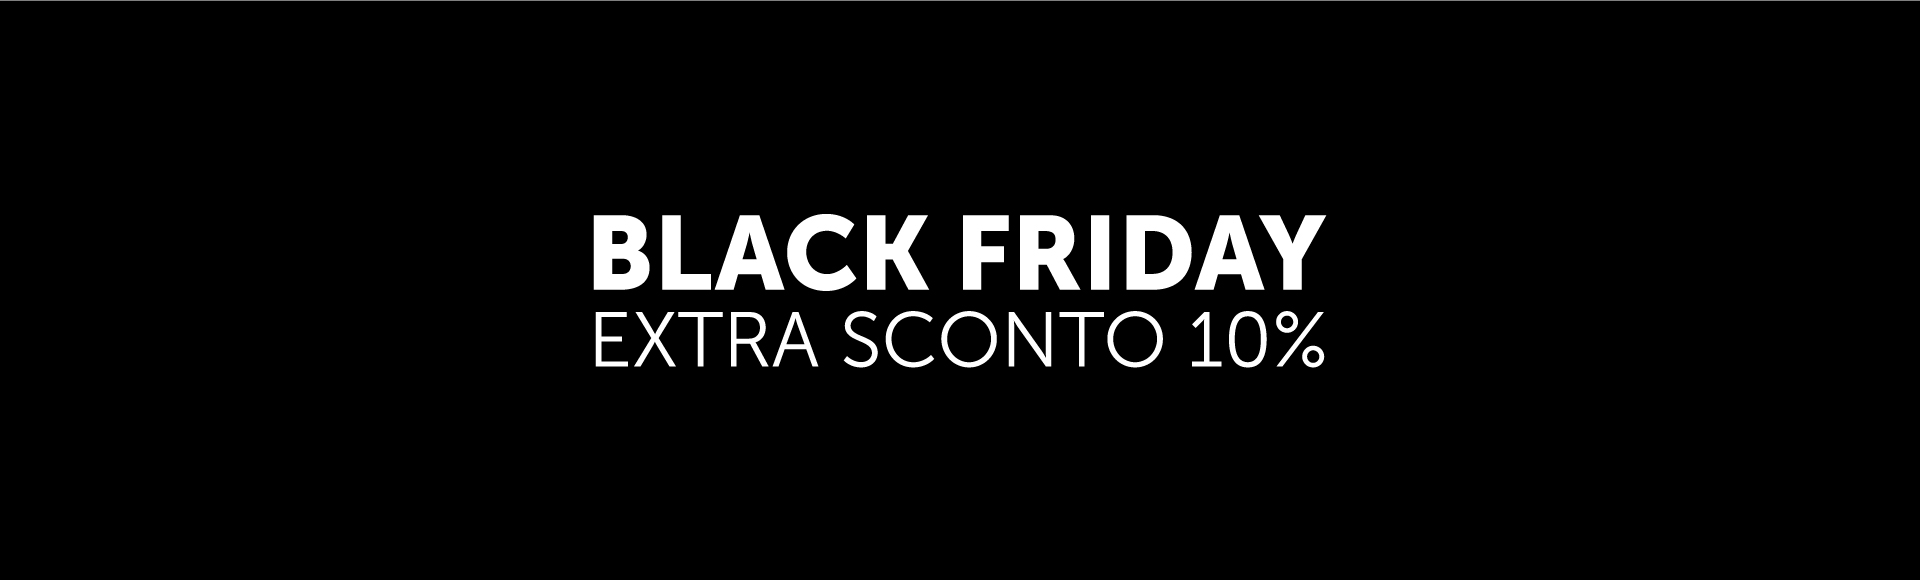 Promozione Black Friday: extra sconto 10%